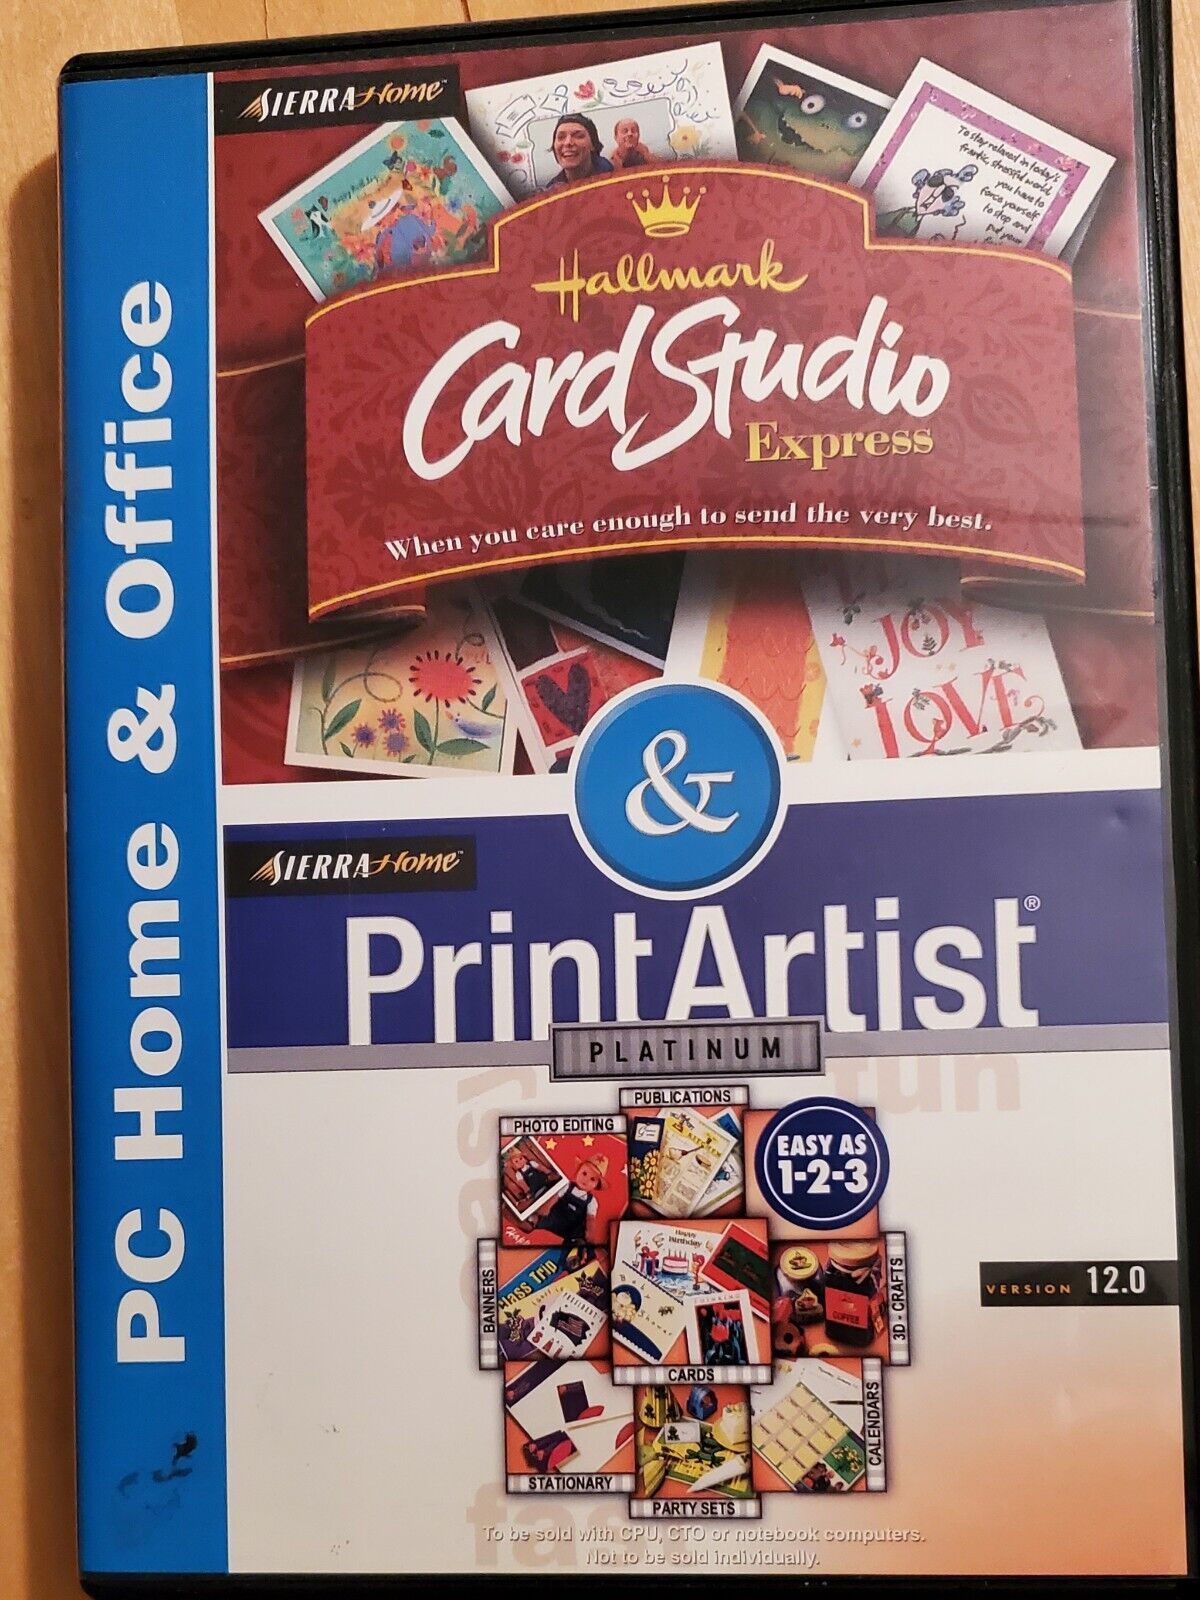 Sierra Home Hallmark Card Studio Express & Print Artist Platinum Software 2000